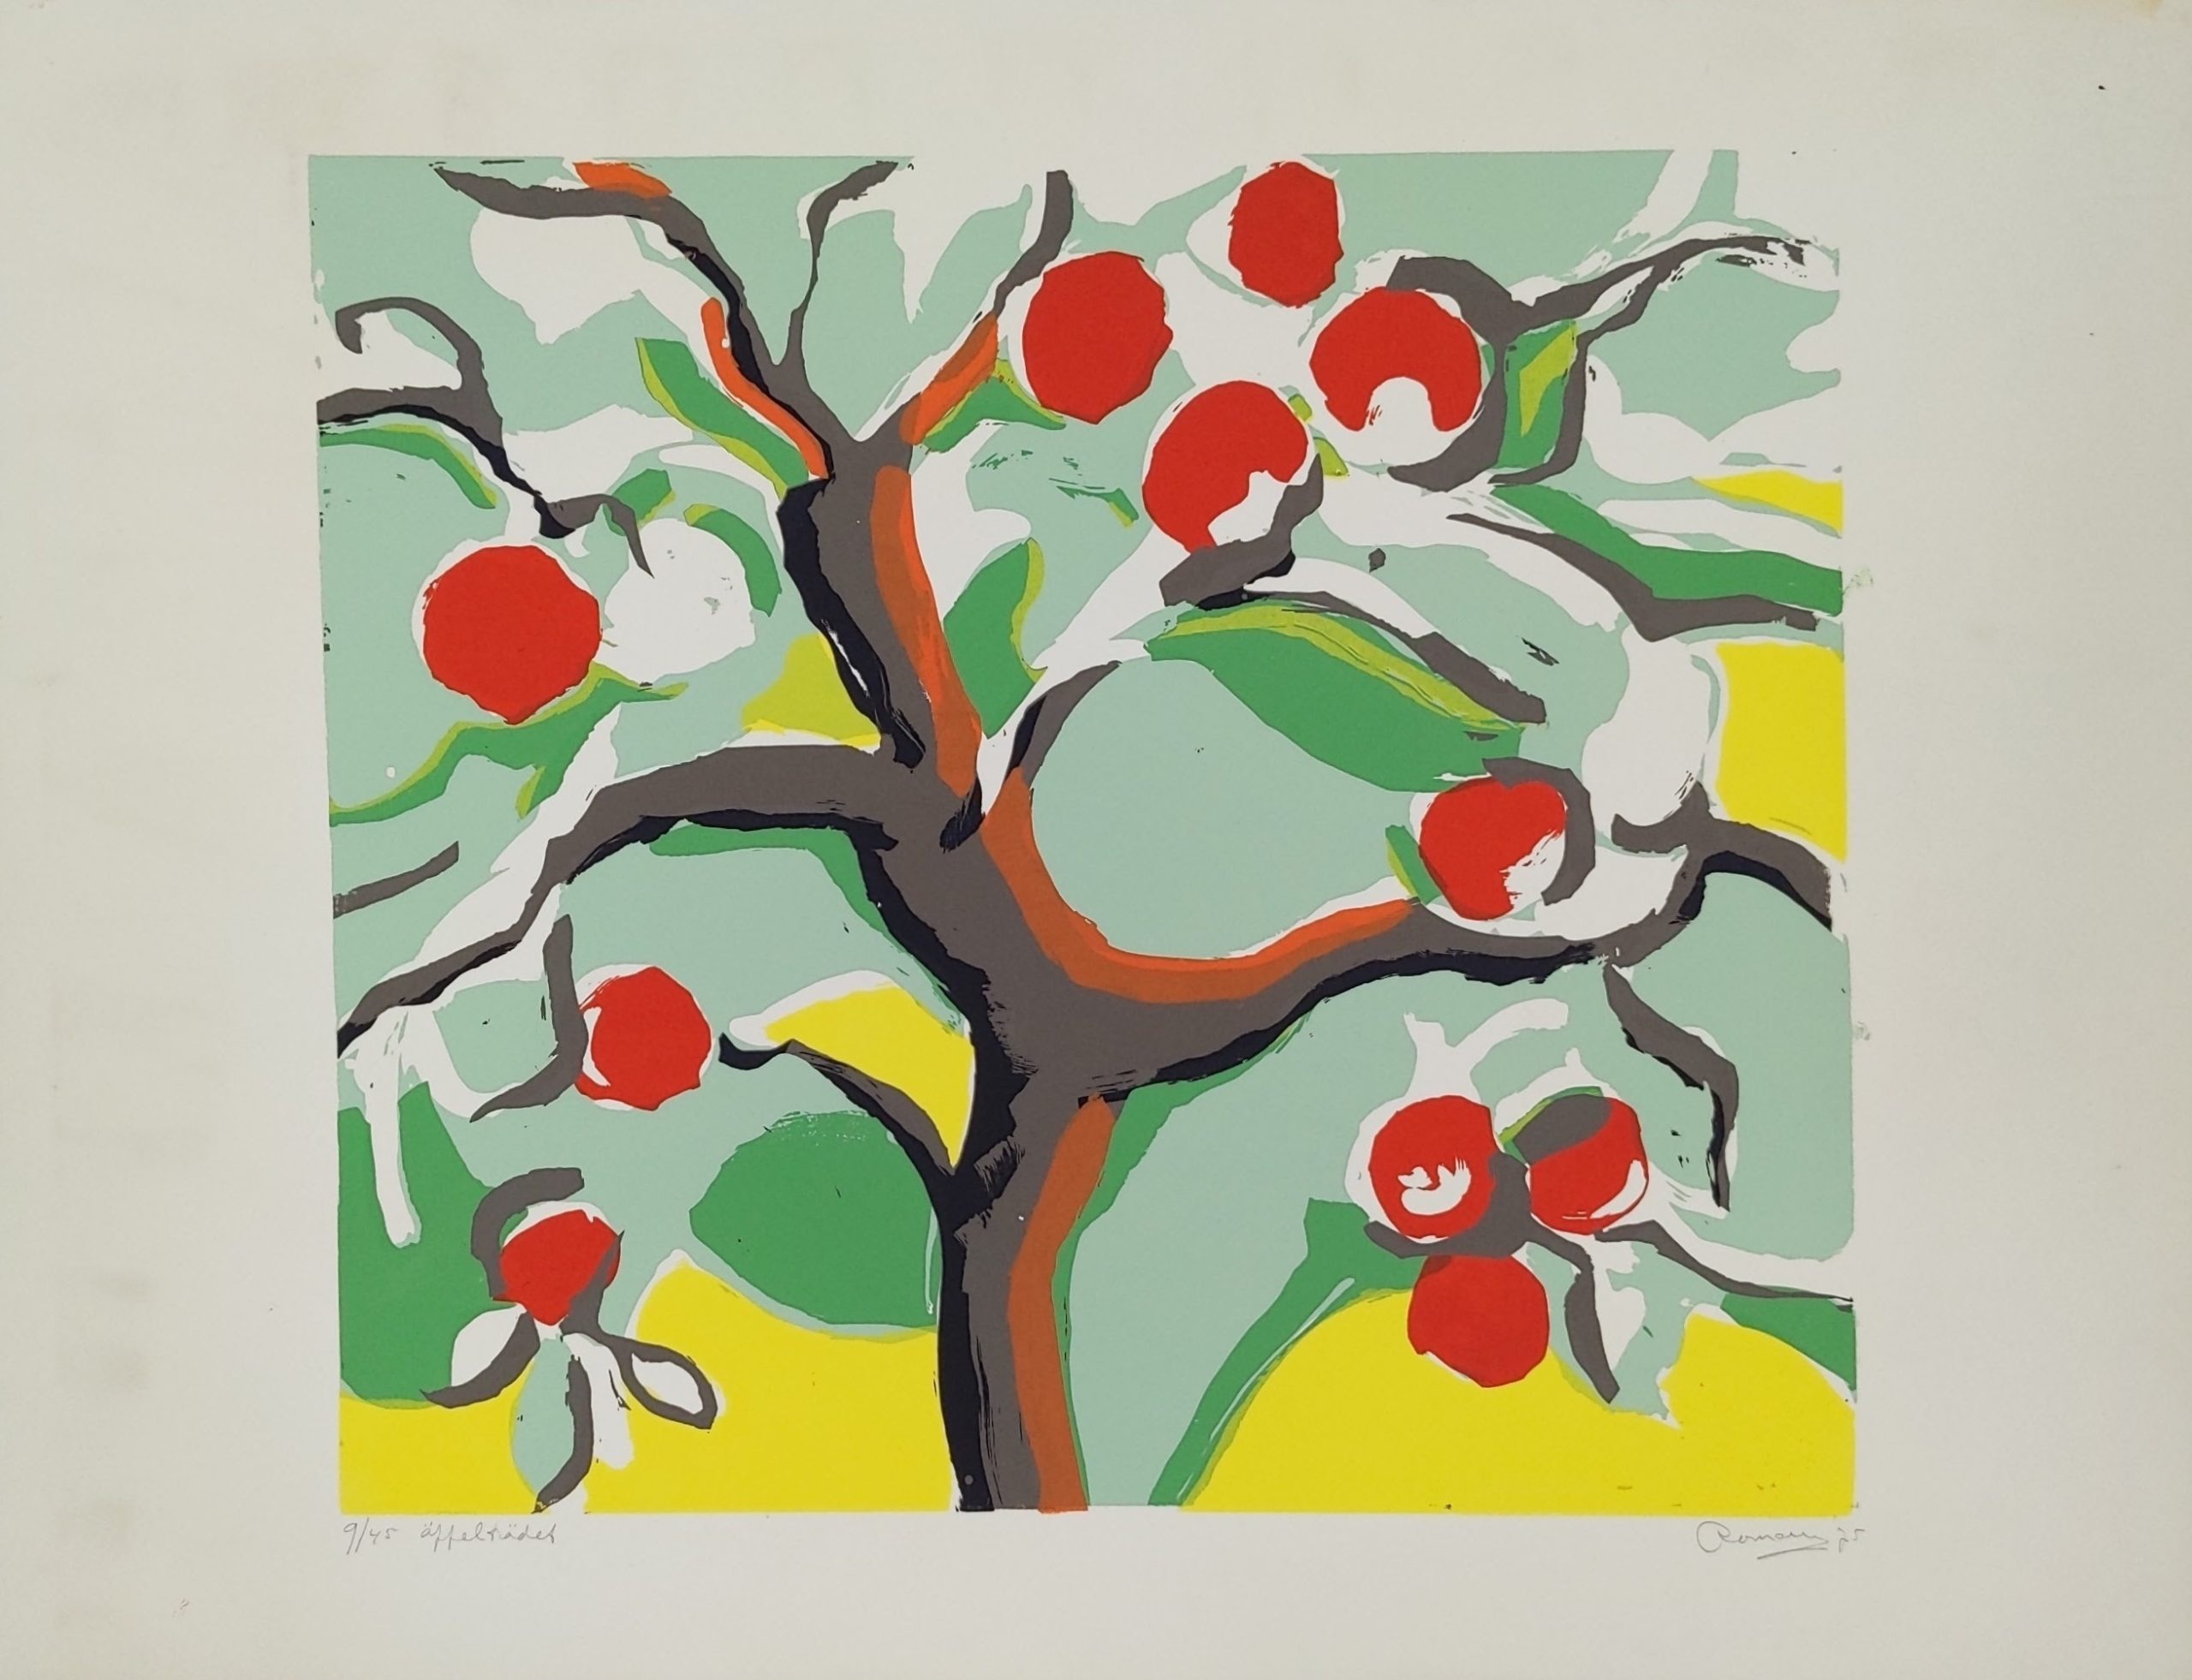 "Äppelträdet", 1975, screentryck 45 x 61 cm. Ed. 45. 3 200 kr (320 €)